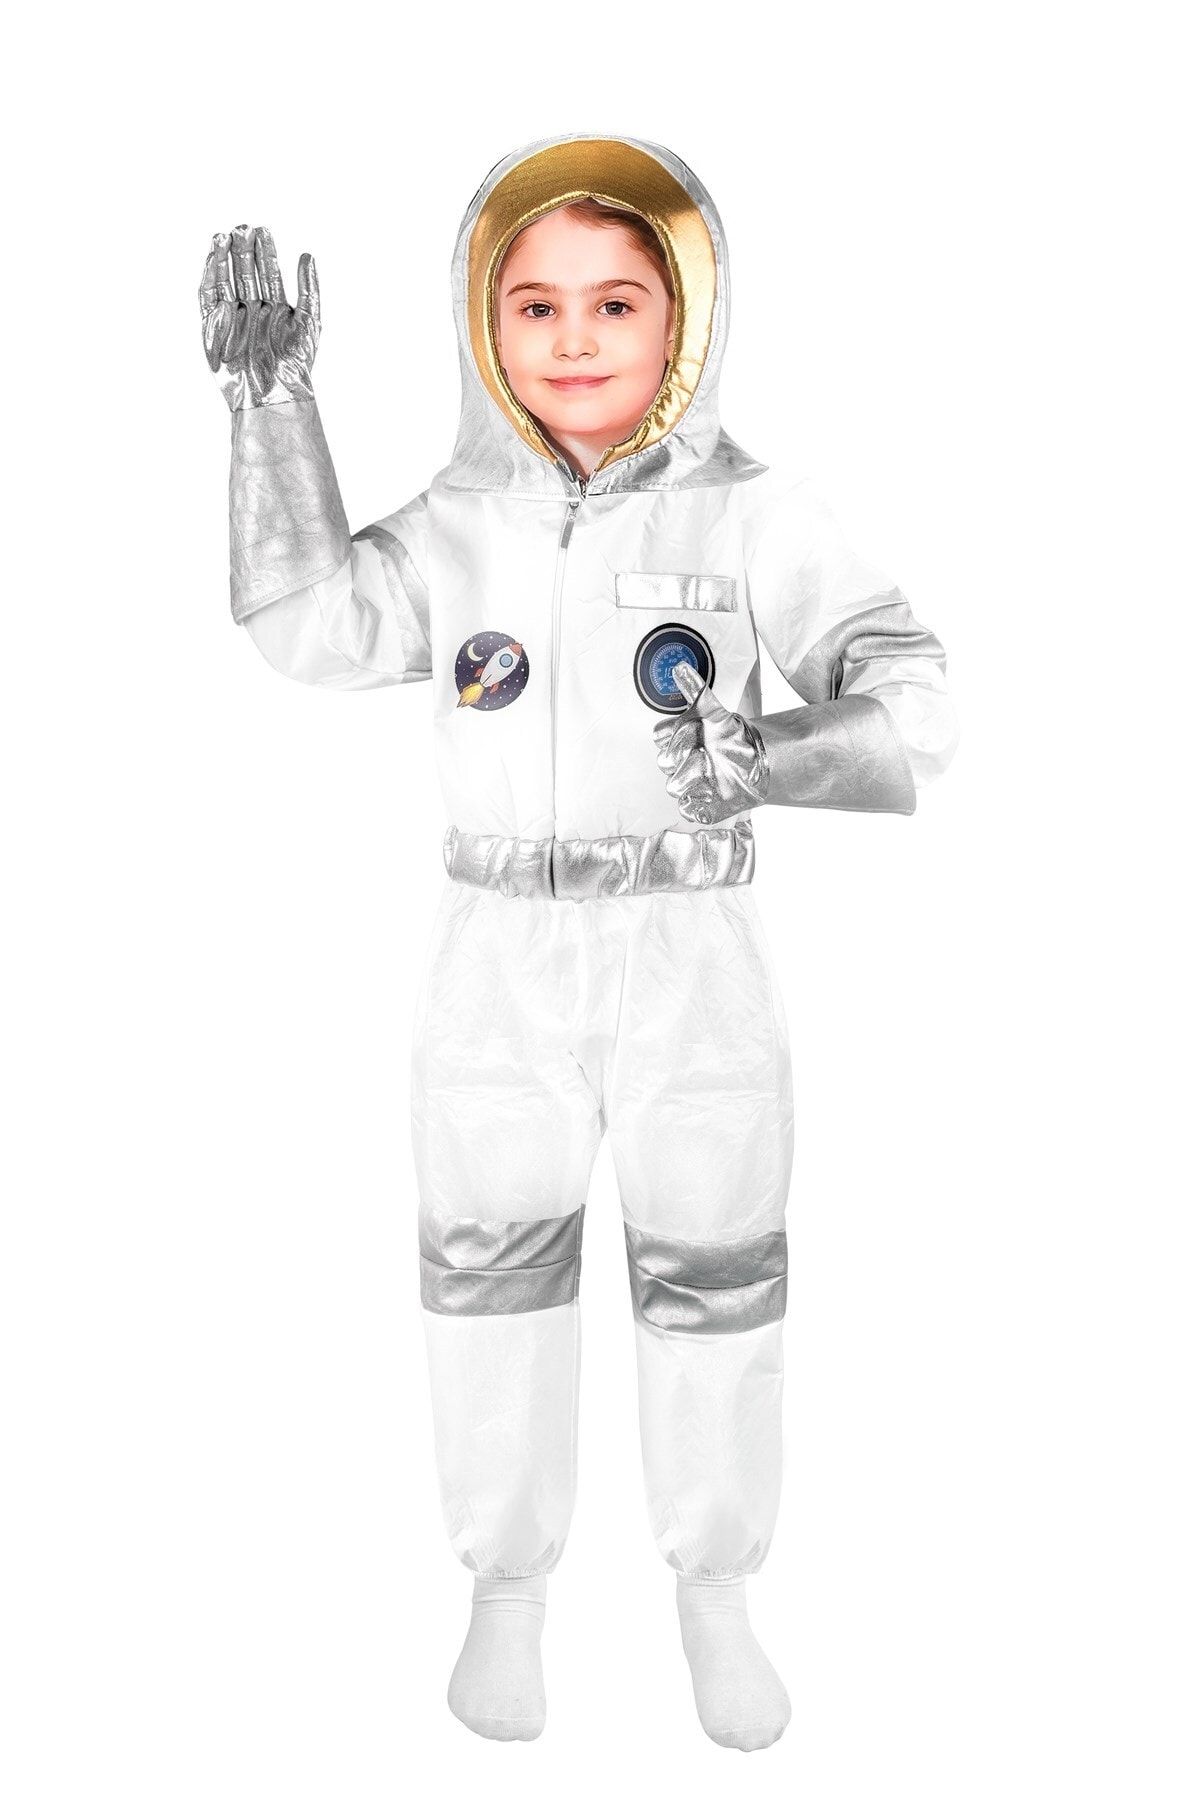 OULABİMİR Kız Astronot Kostümü Çocuk Kıyafeti